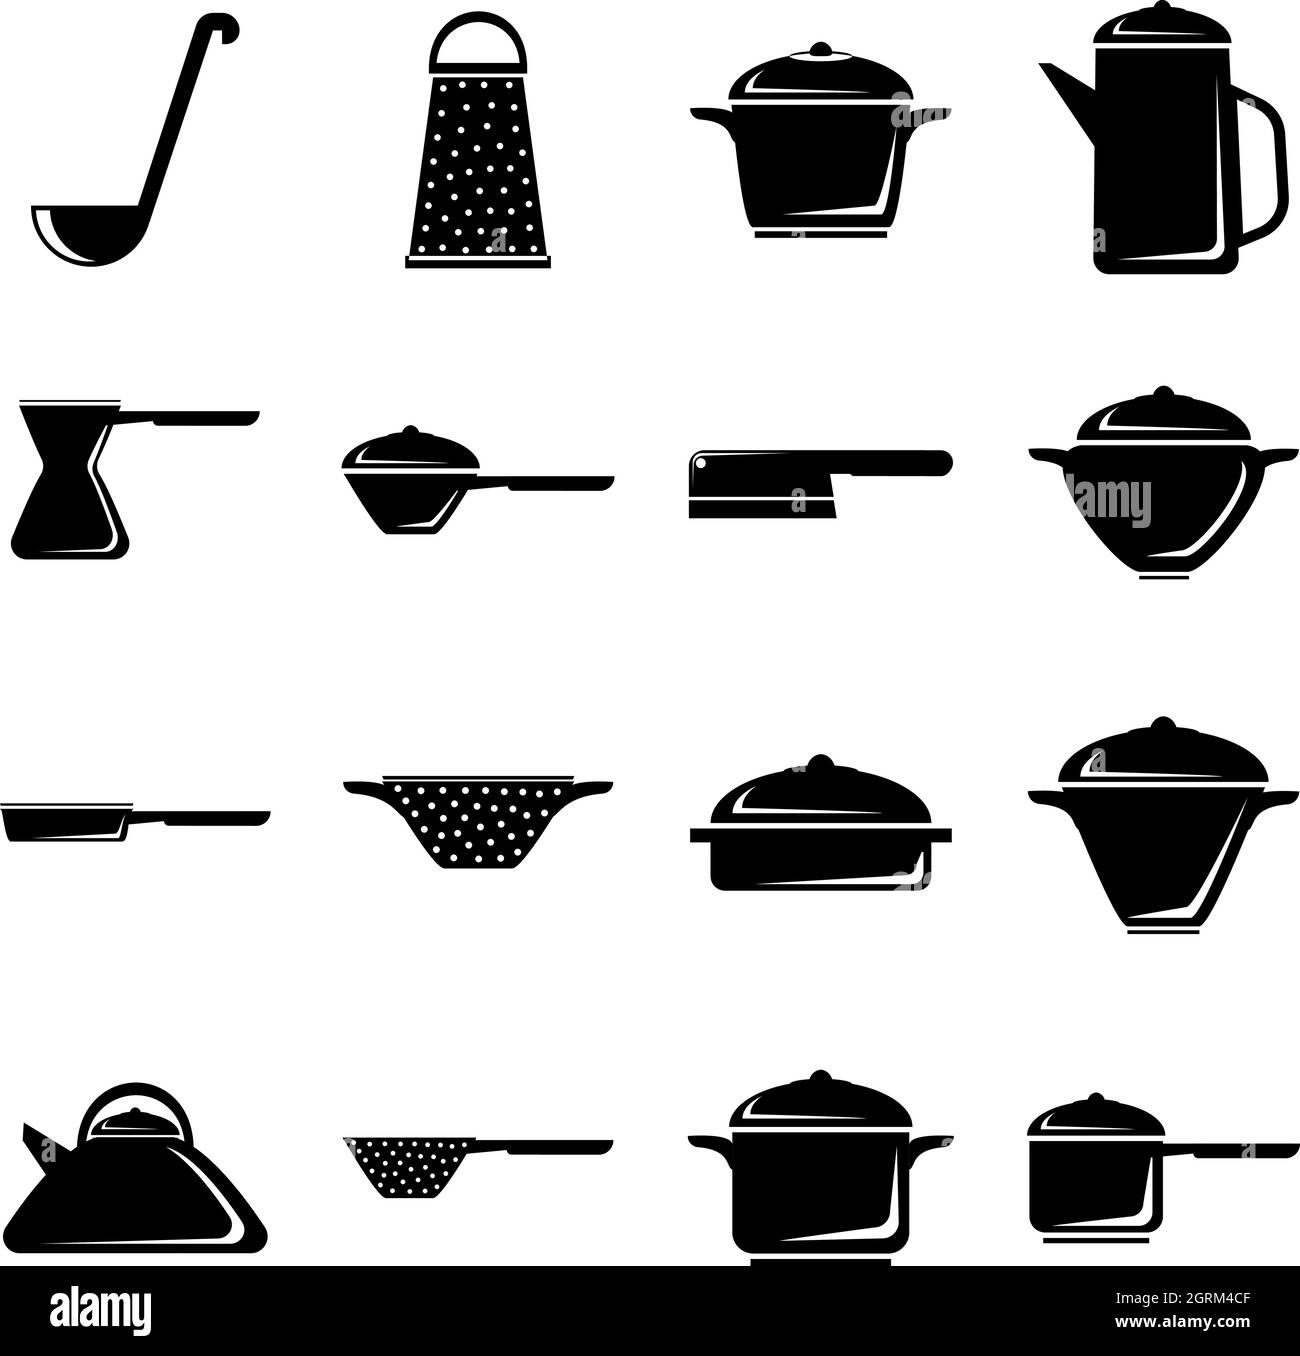 Geschirr Icons Set, einfachen Stil Stock Vektor